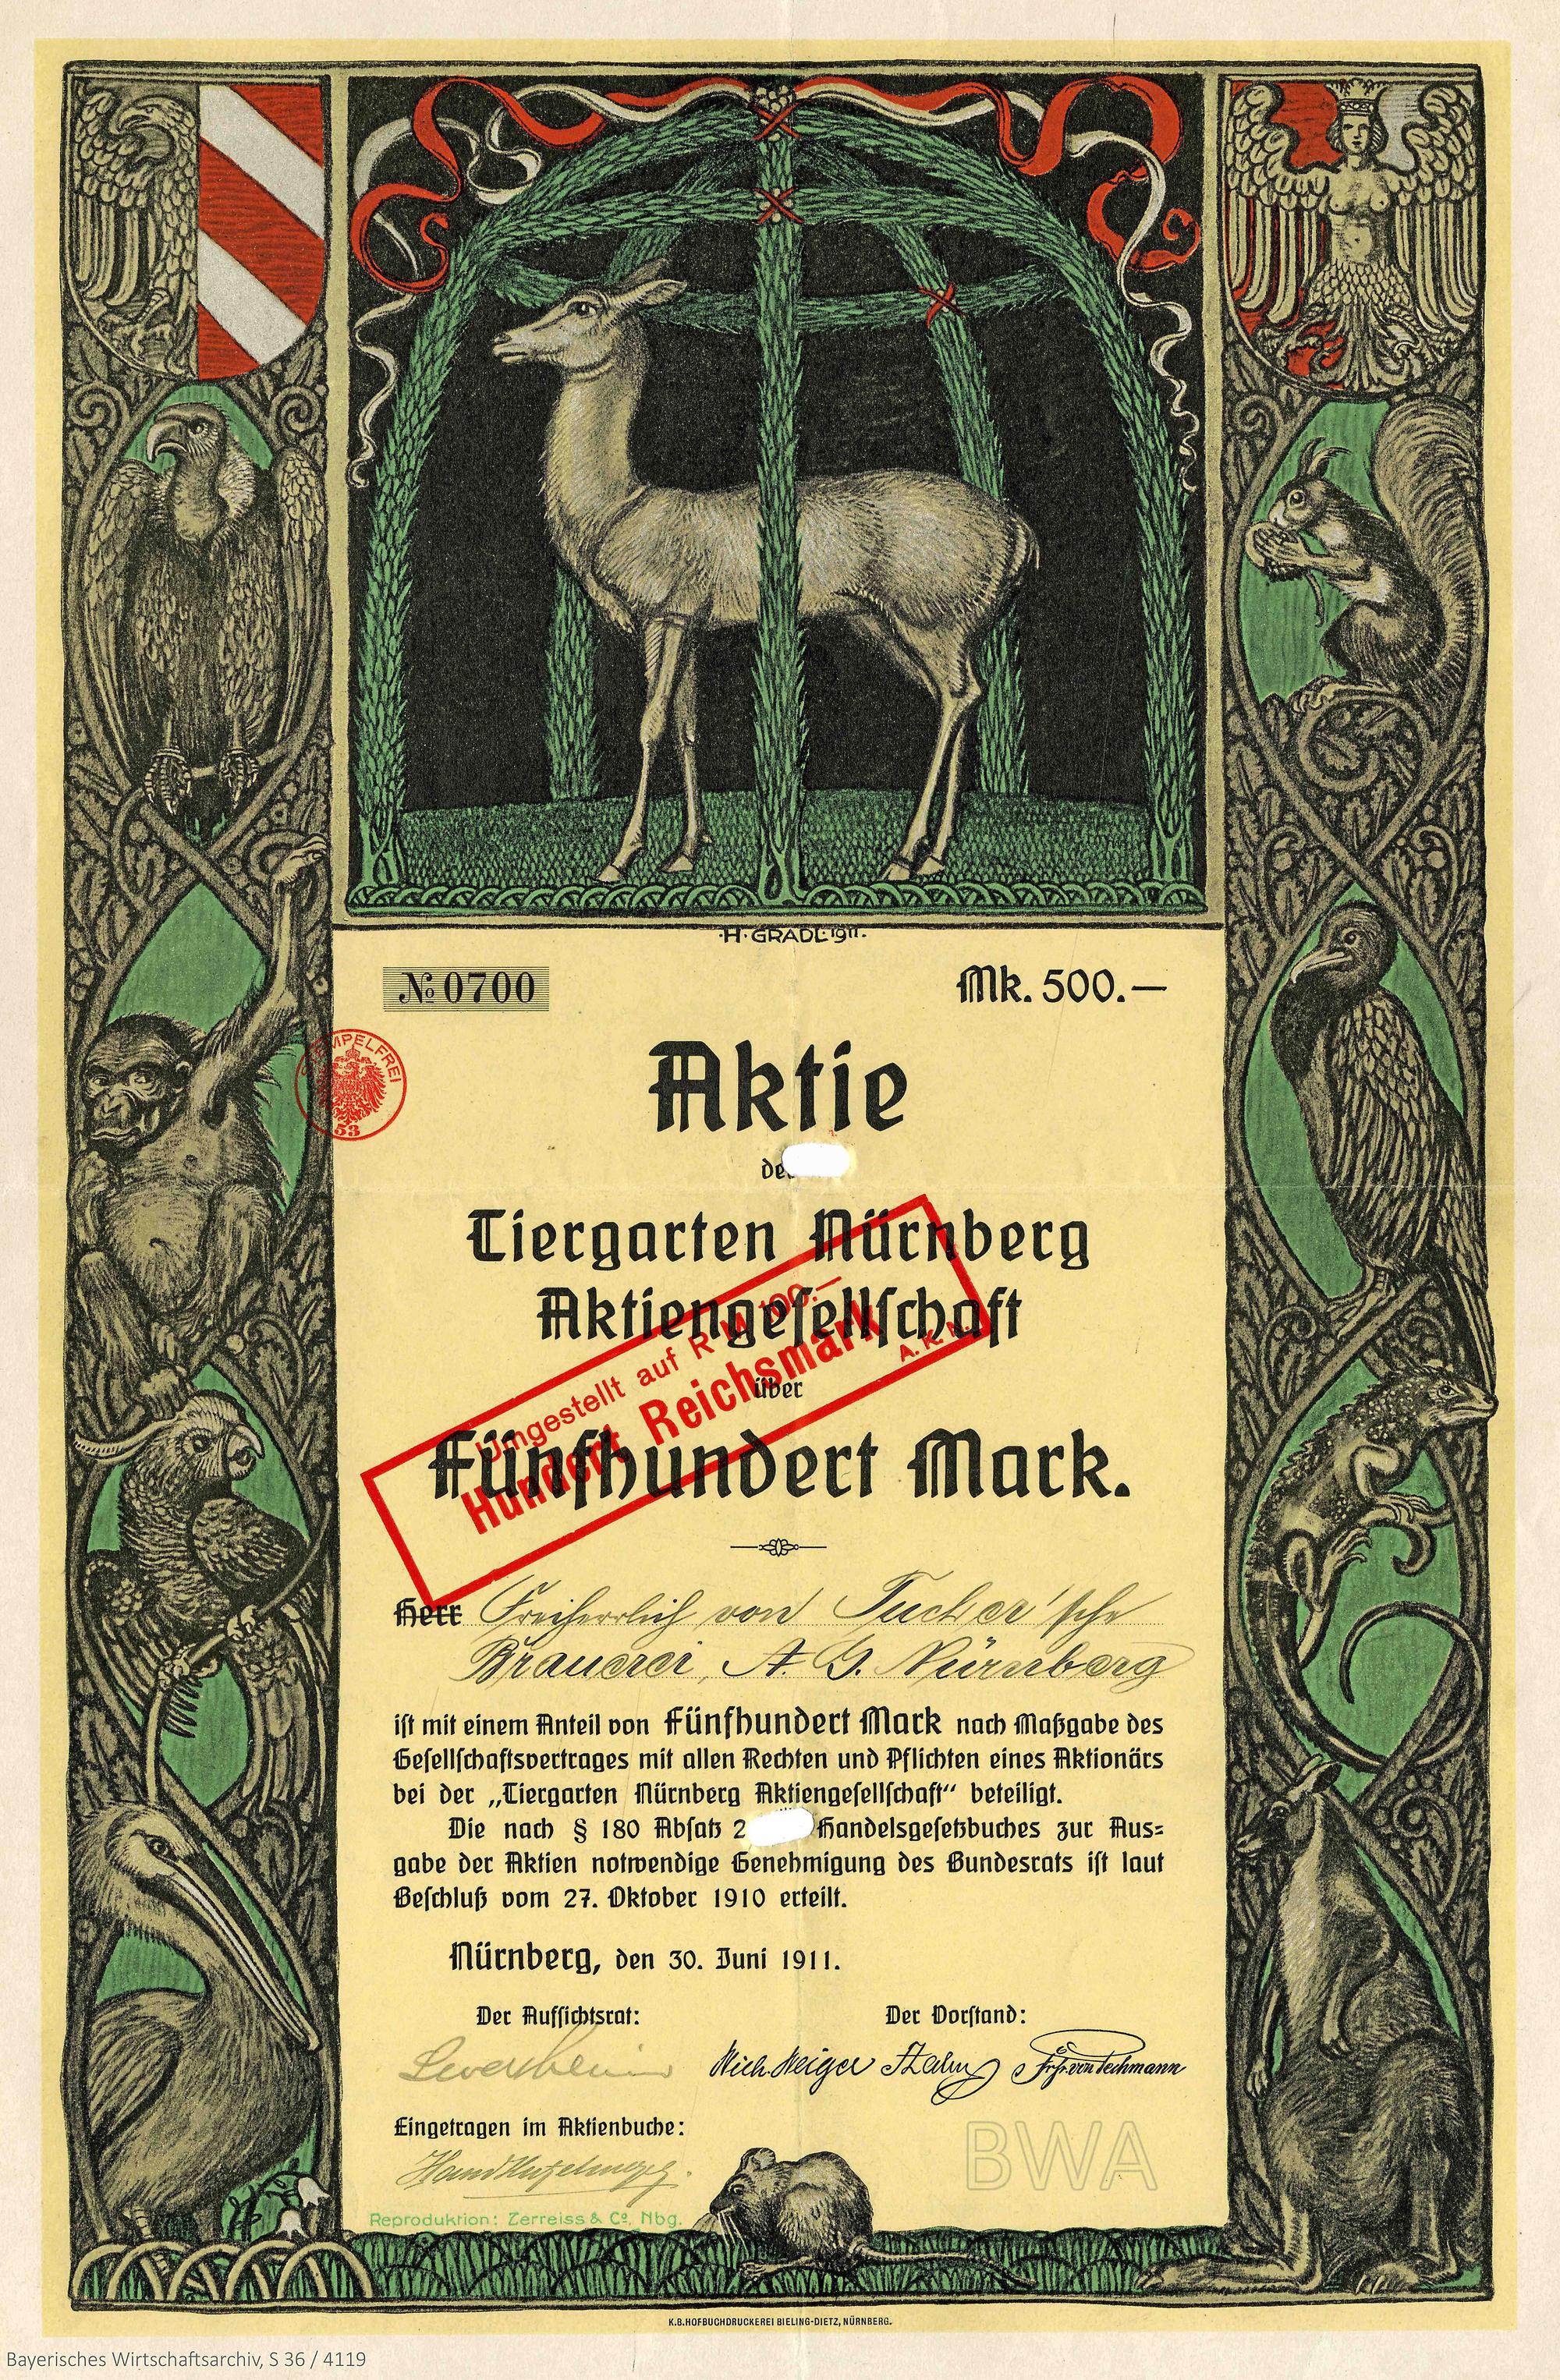 Gründeraktie für die Tiergarten Nürnberg AG, 1911